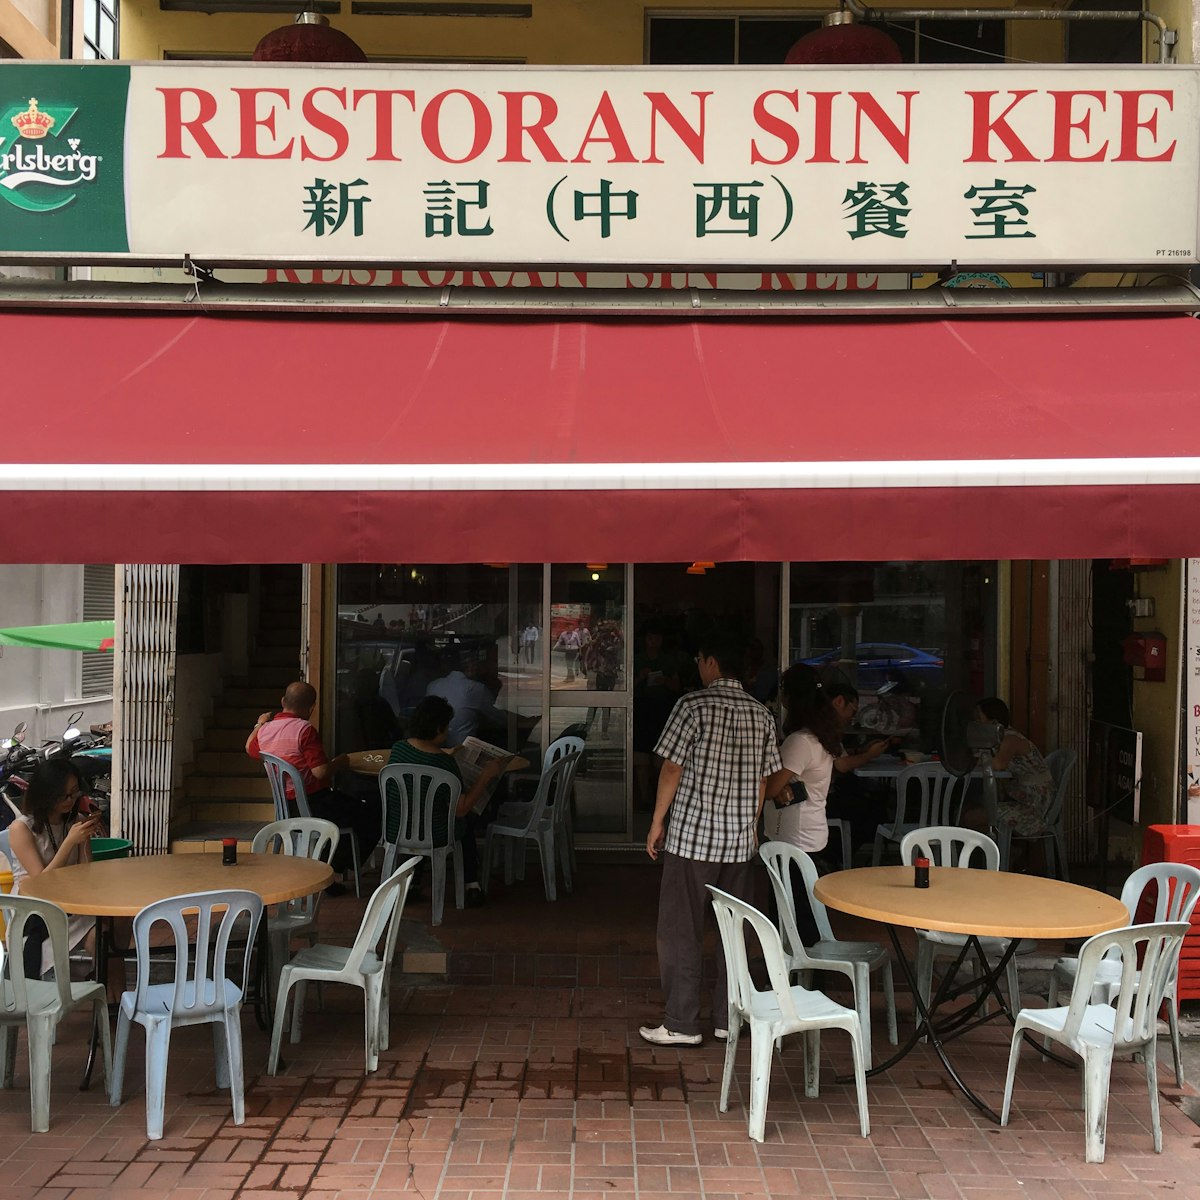 Restoran Sin Kee is an institution in Brickfields.